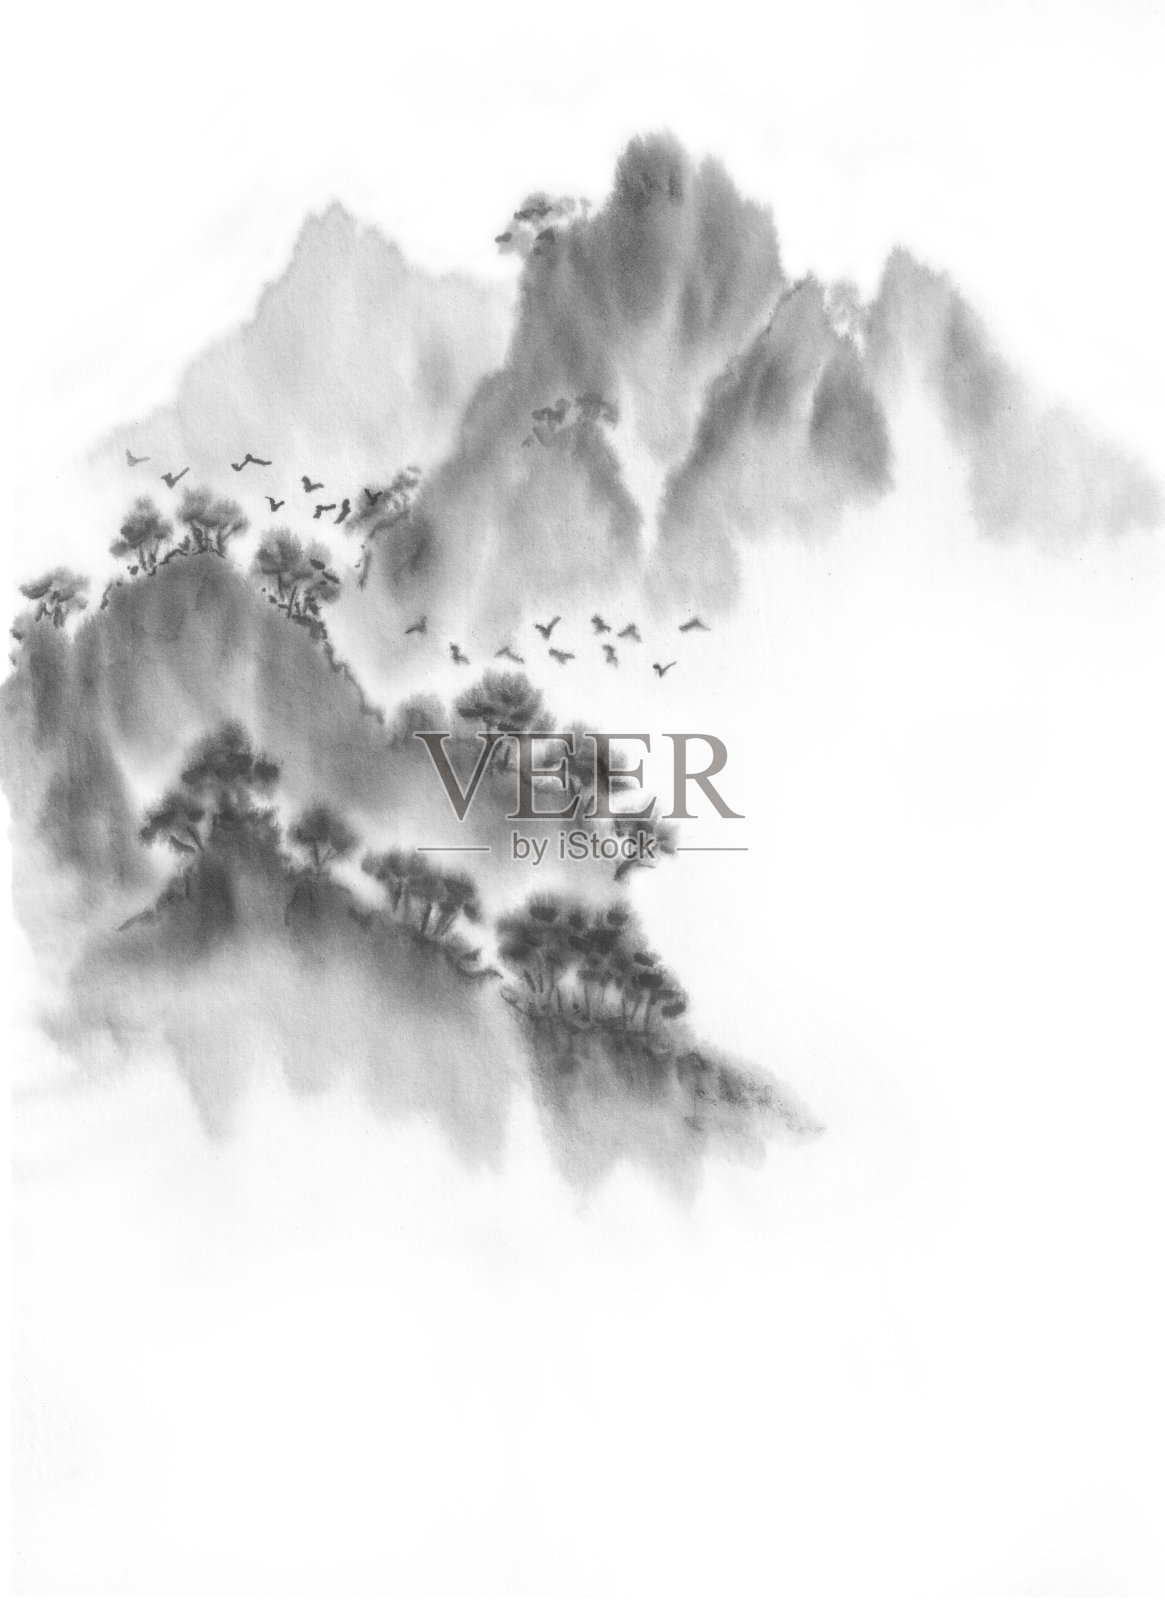 背景与山脉。墨山风景。山在雾中。山上有树。墨水的形象。插画图片素材